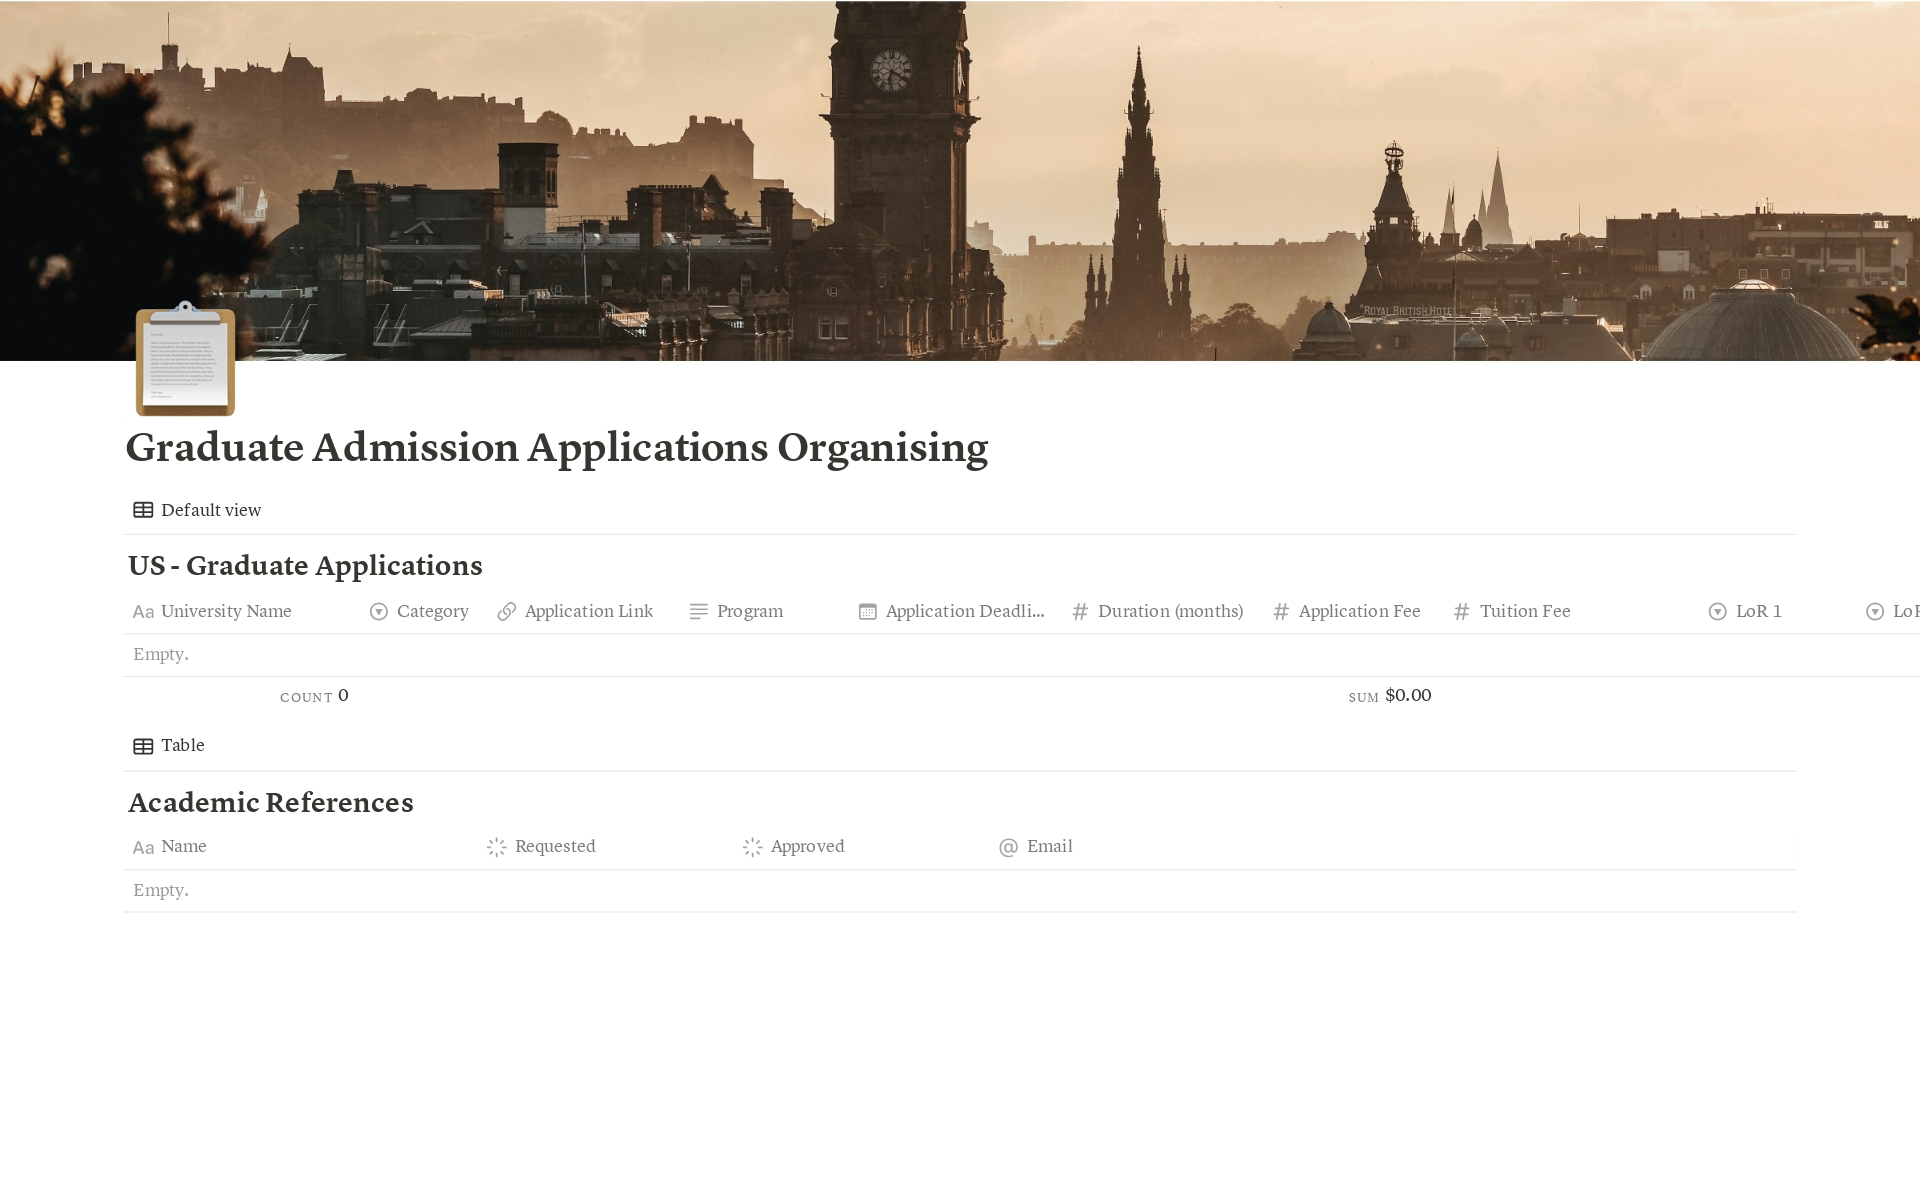 Aperçu du modèle de Graduate Admission Applications Organising